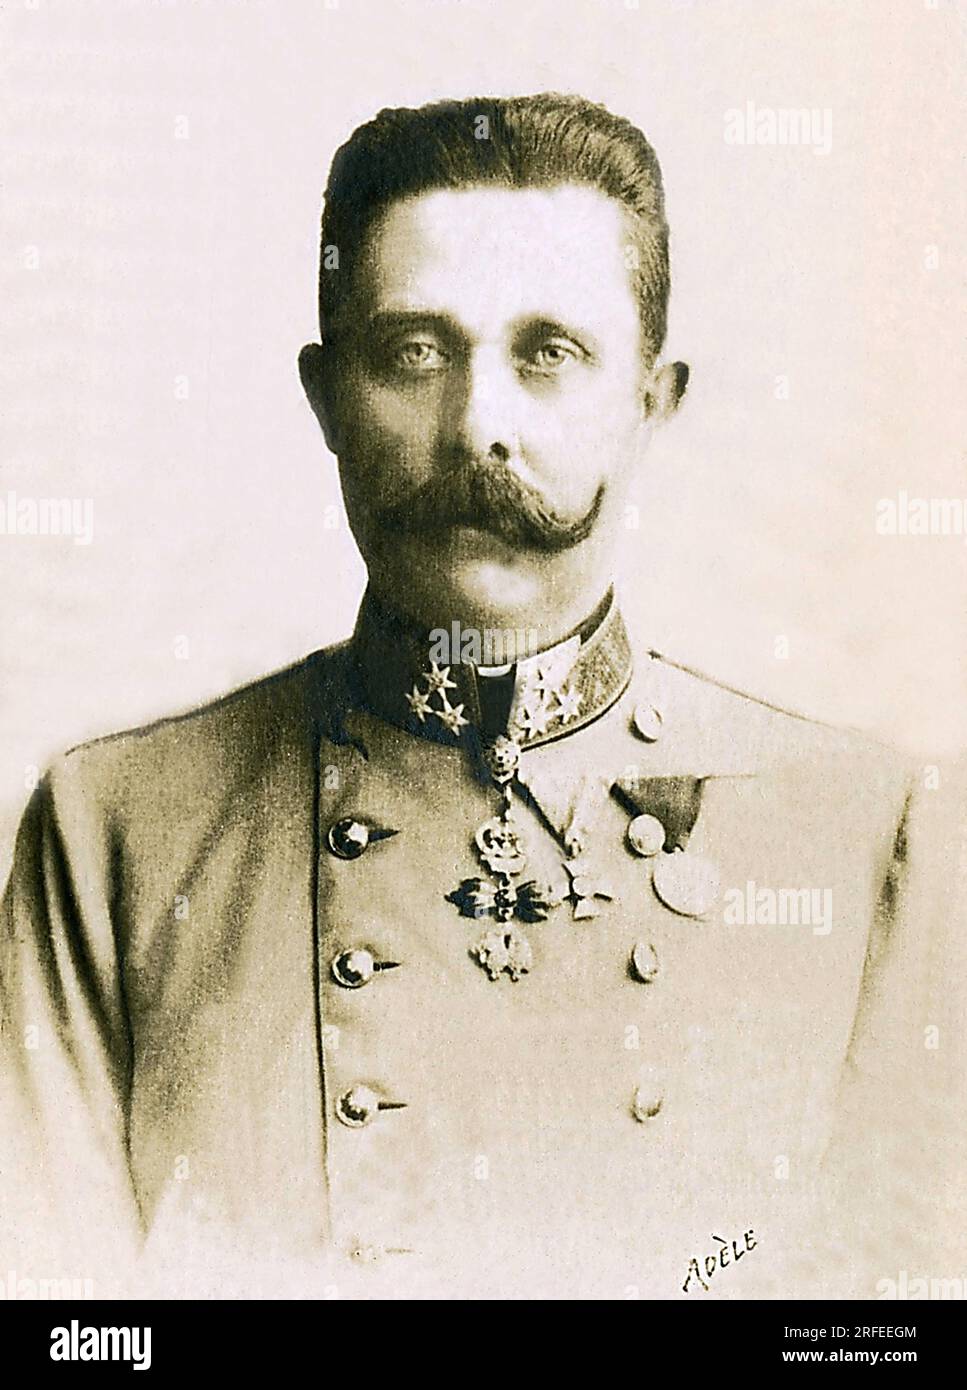 Portrait de Francois Ferdinand de Habsbourg (1863-1914), archiduc d'Autriche. Fotografie, Debüt du 20e Siecle, Paris. Stockfoto